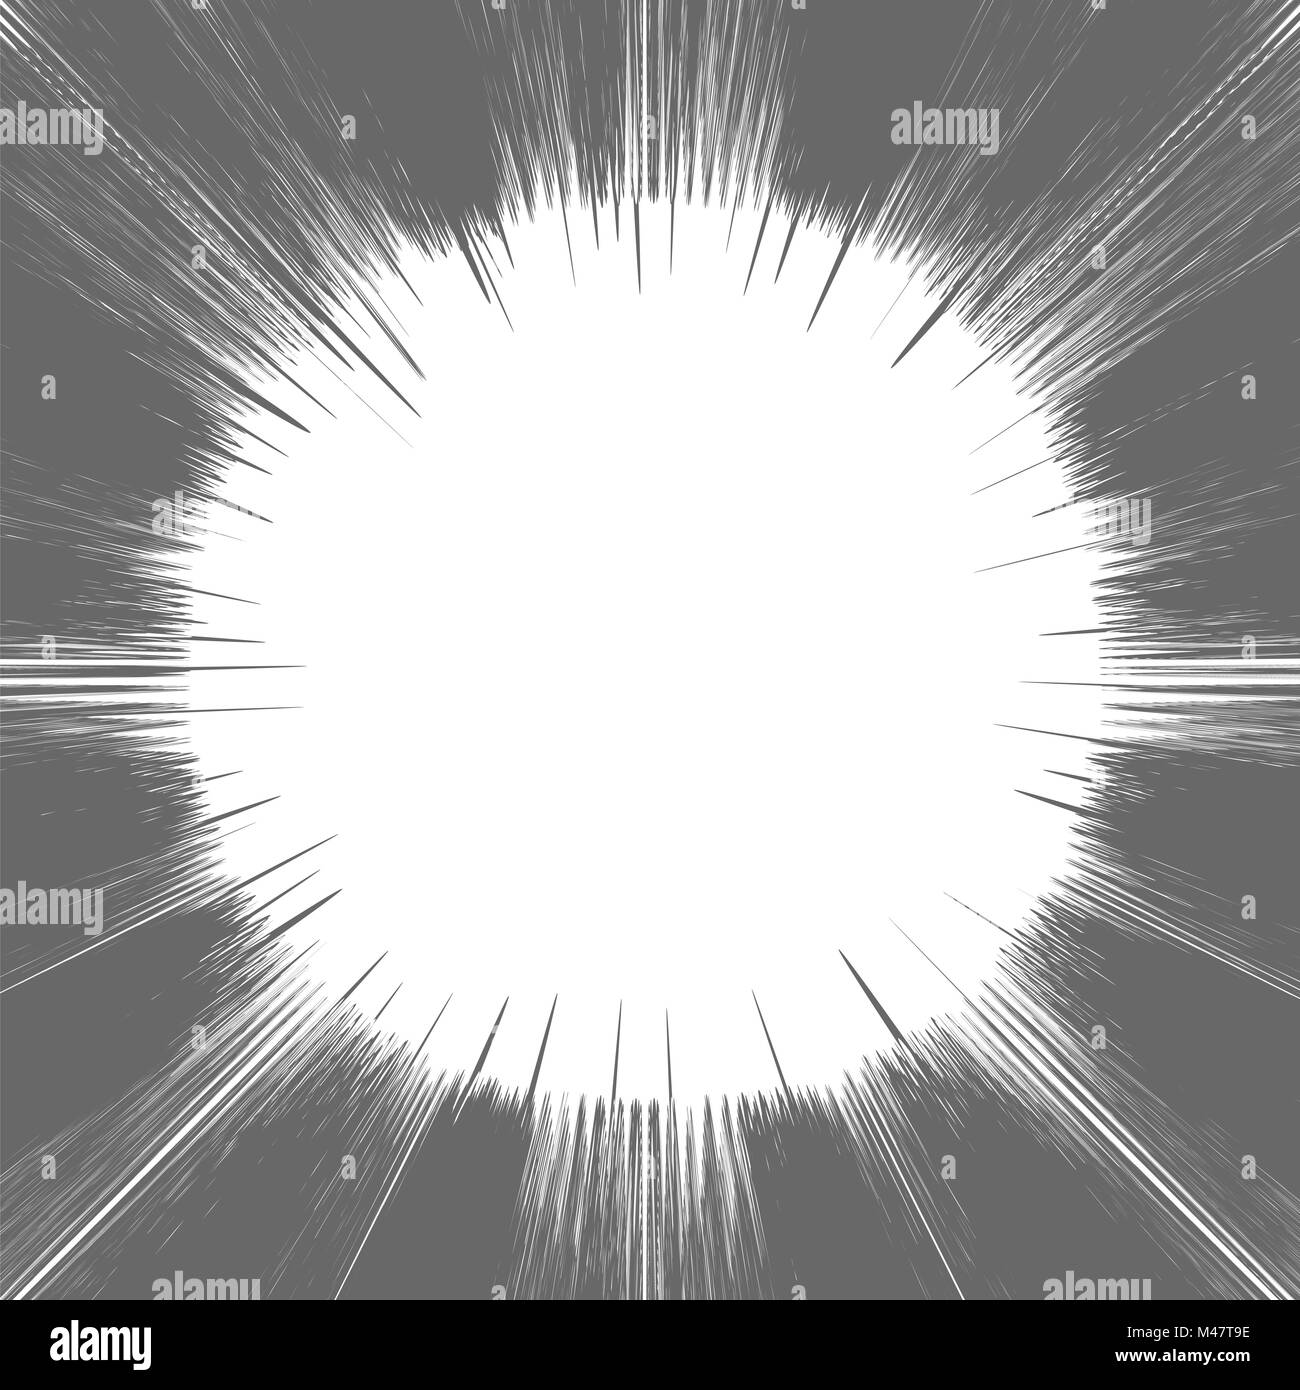 Comic-Buch-graue und weiße radiale Linien Hintergrund Stockfoto